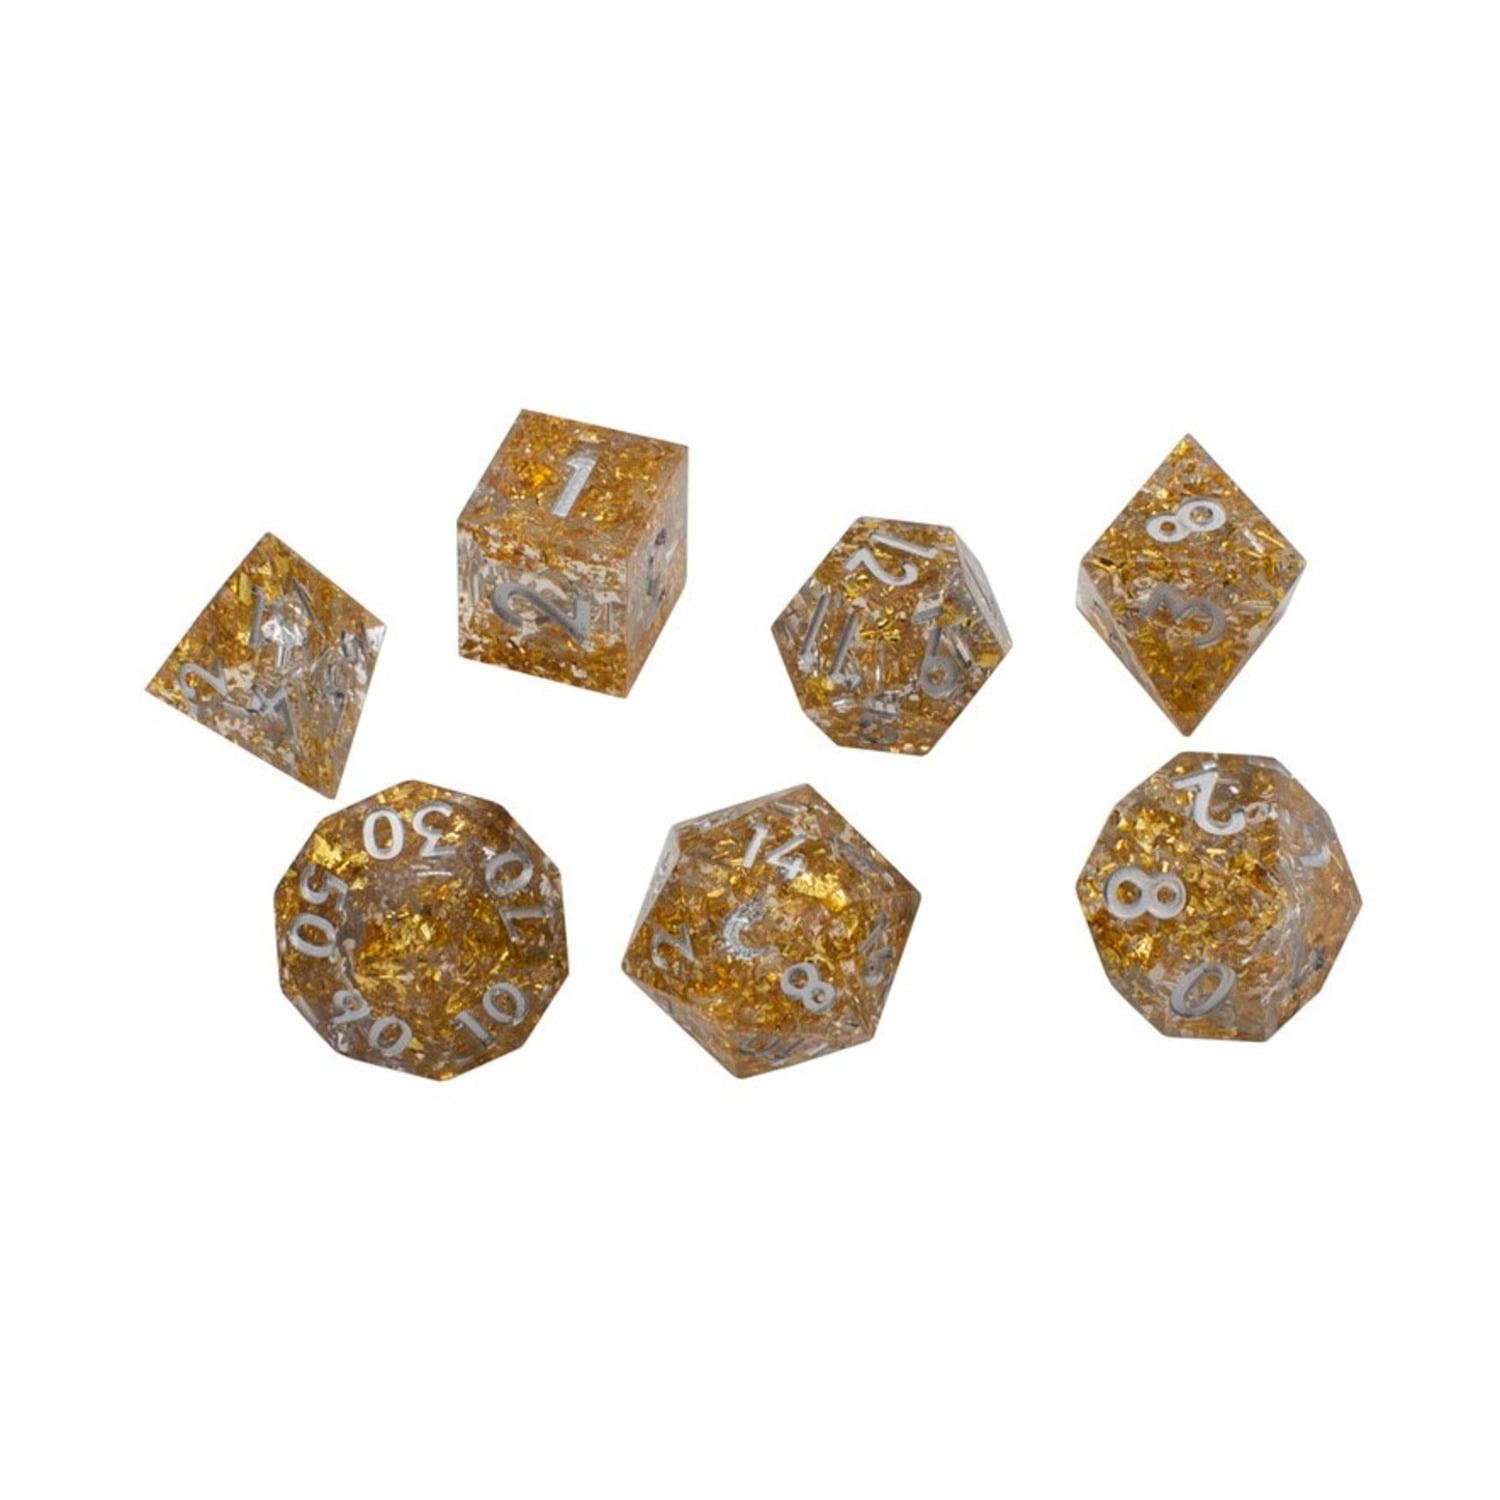 Sharp Edged 7 Piece Set - Precious Metals